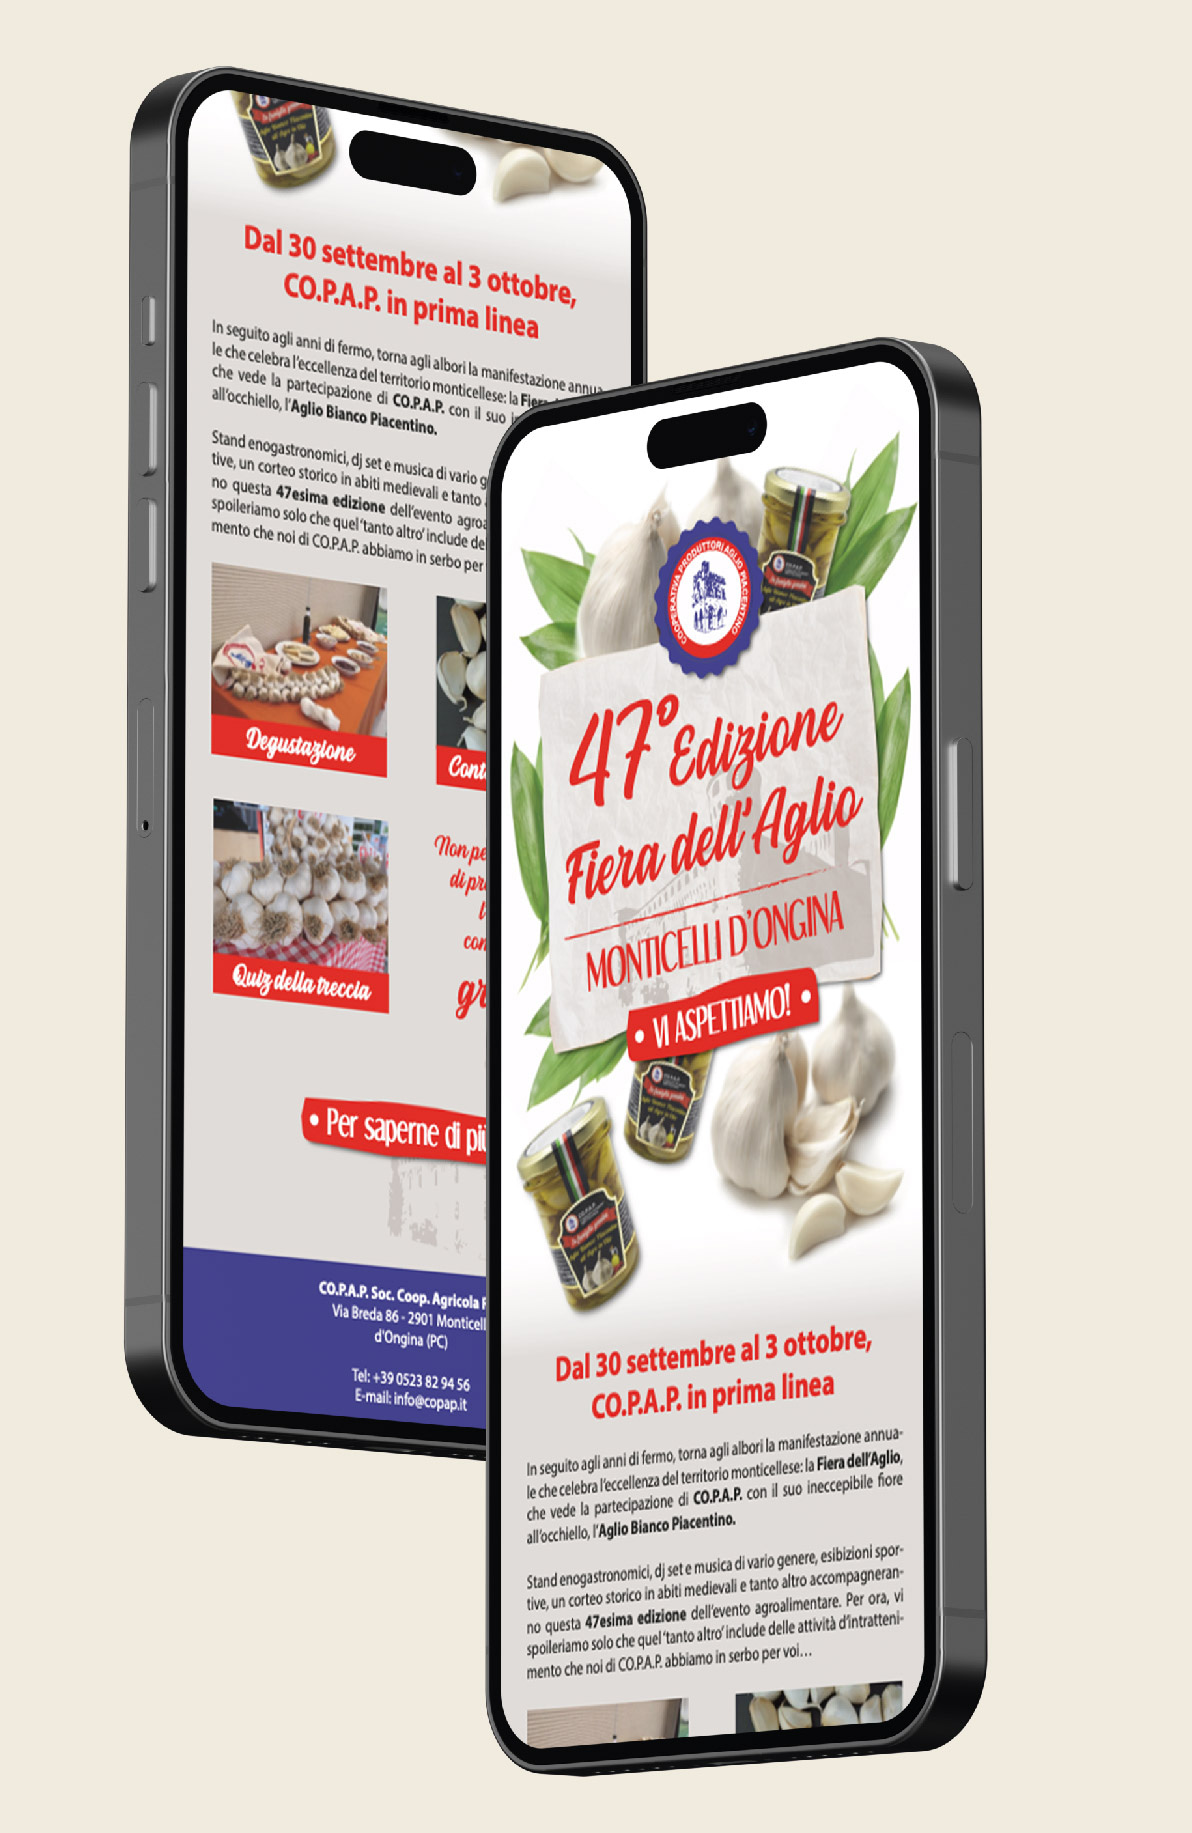 Copap Newsletter Smartphone